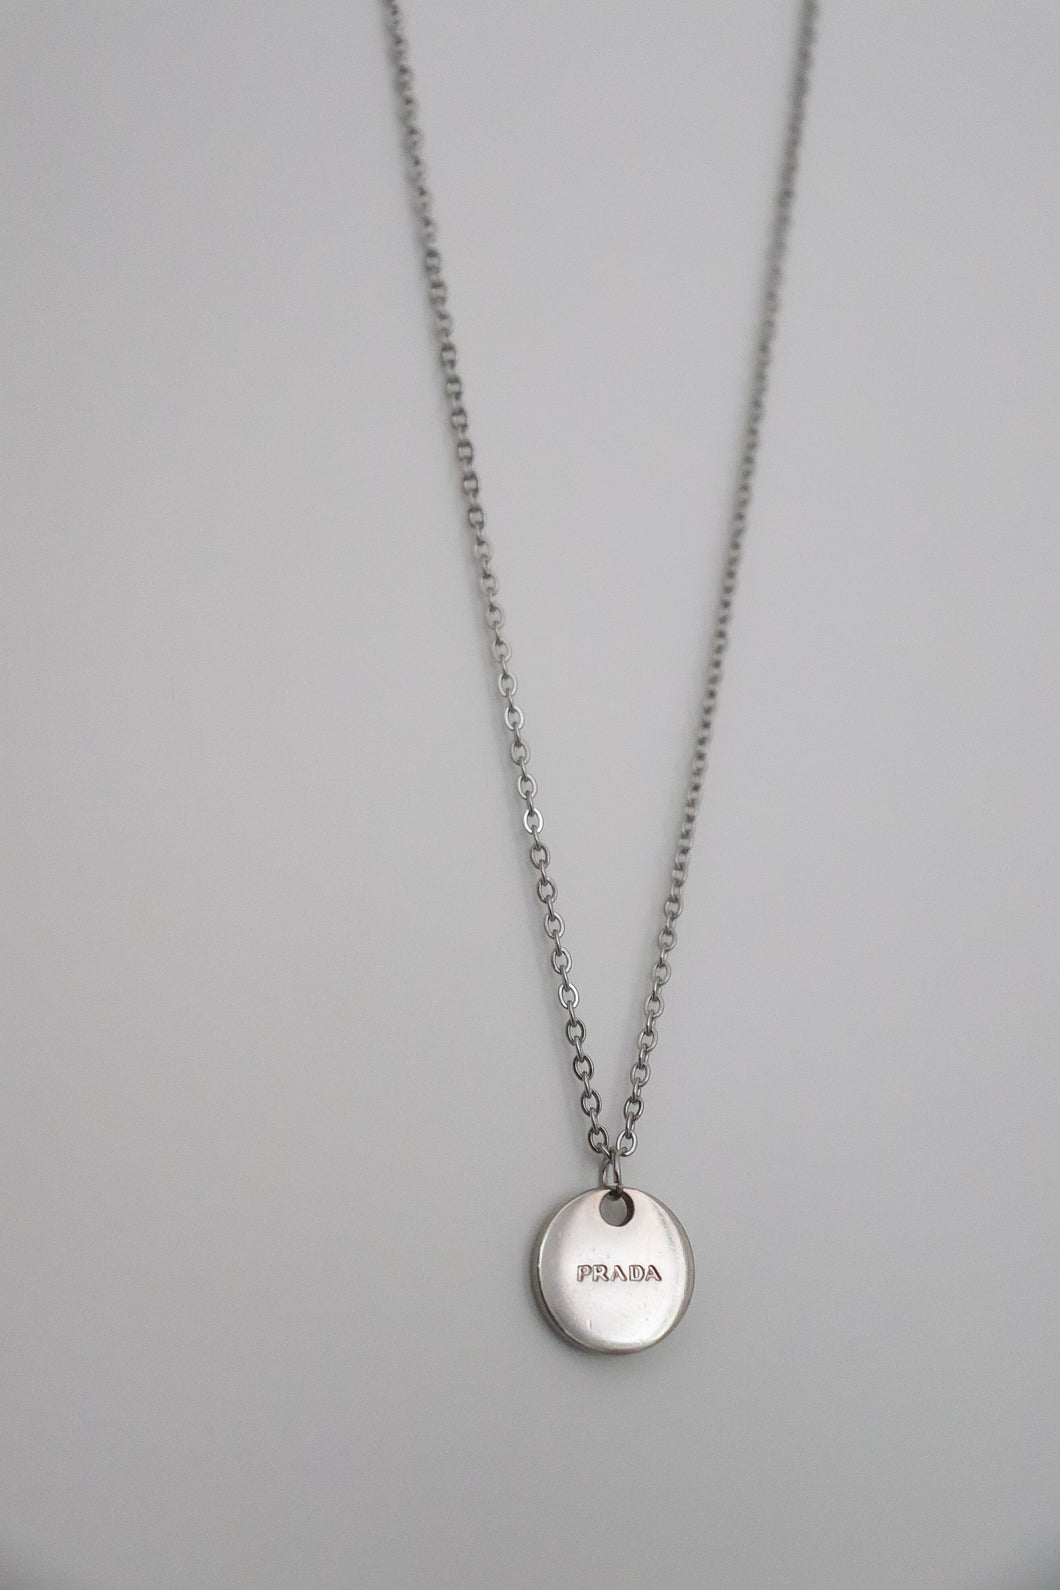 Prada silver circle necklace